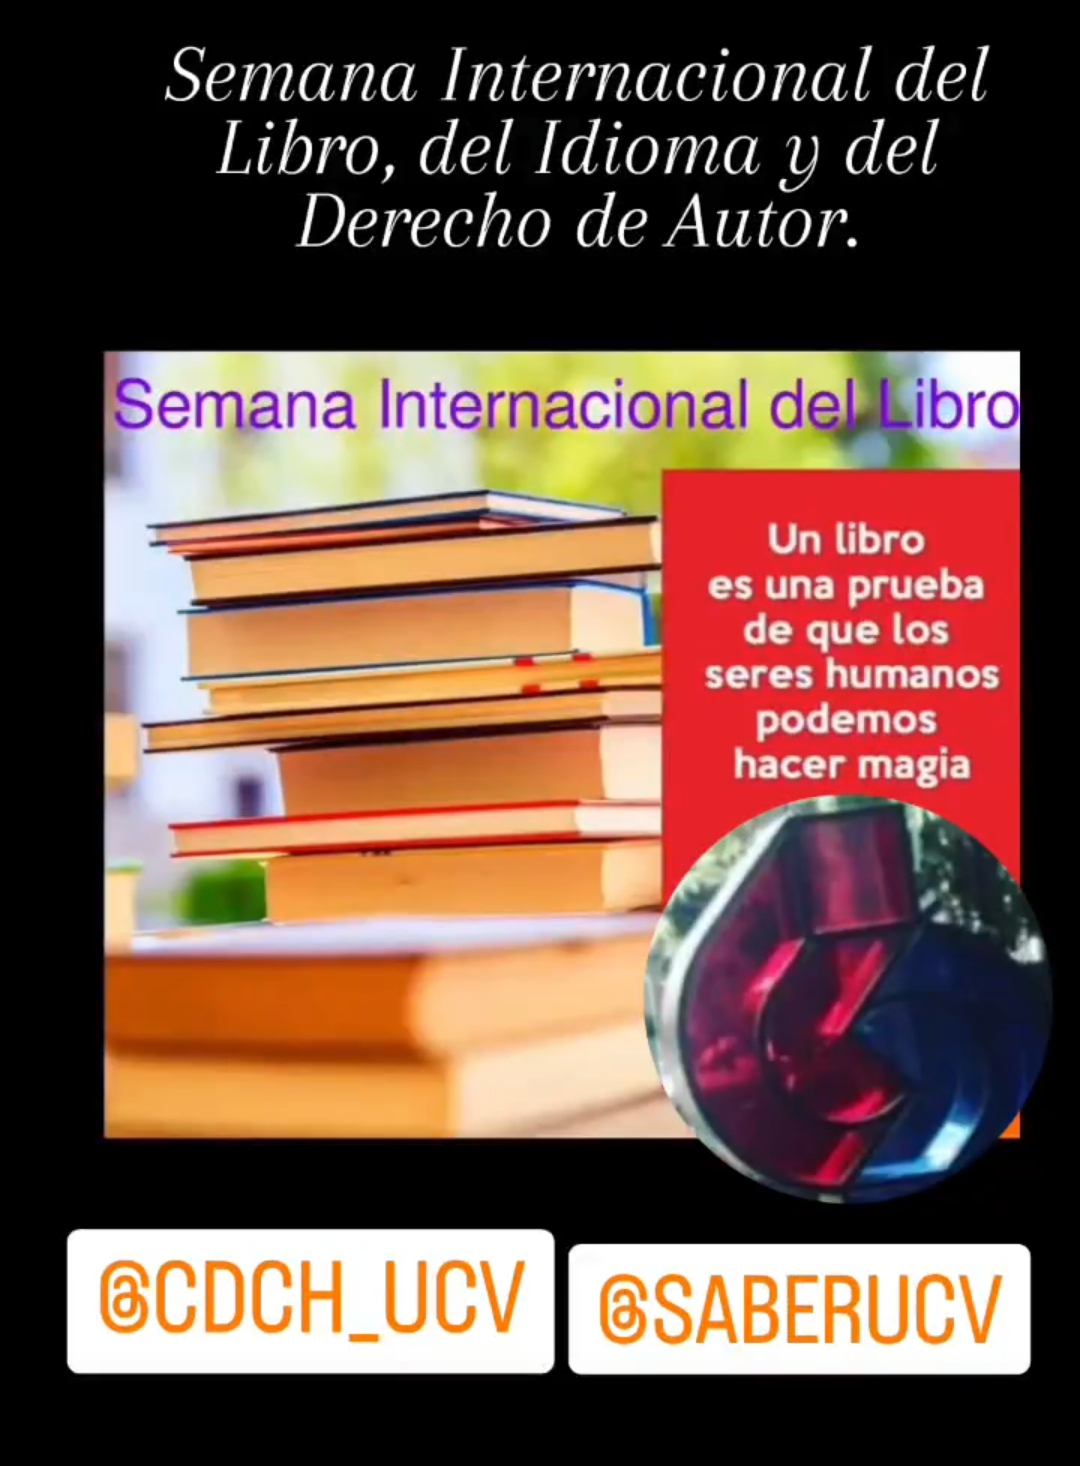 Del 23 al 29 de Abril se celebra la Semana Internacional del Libro, del Idioma y del Derecho de Autor